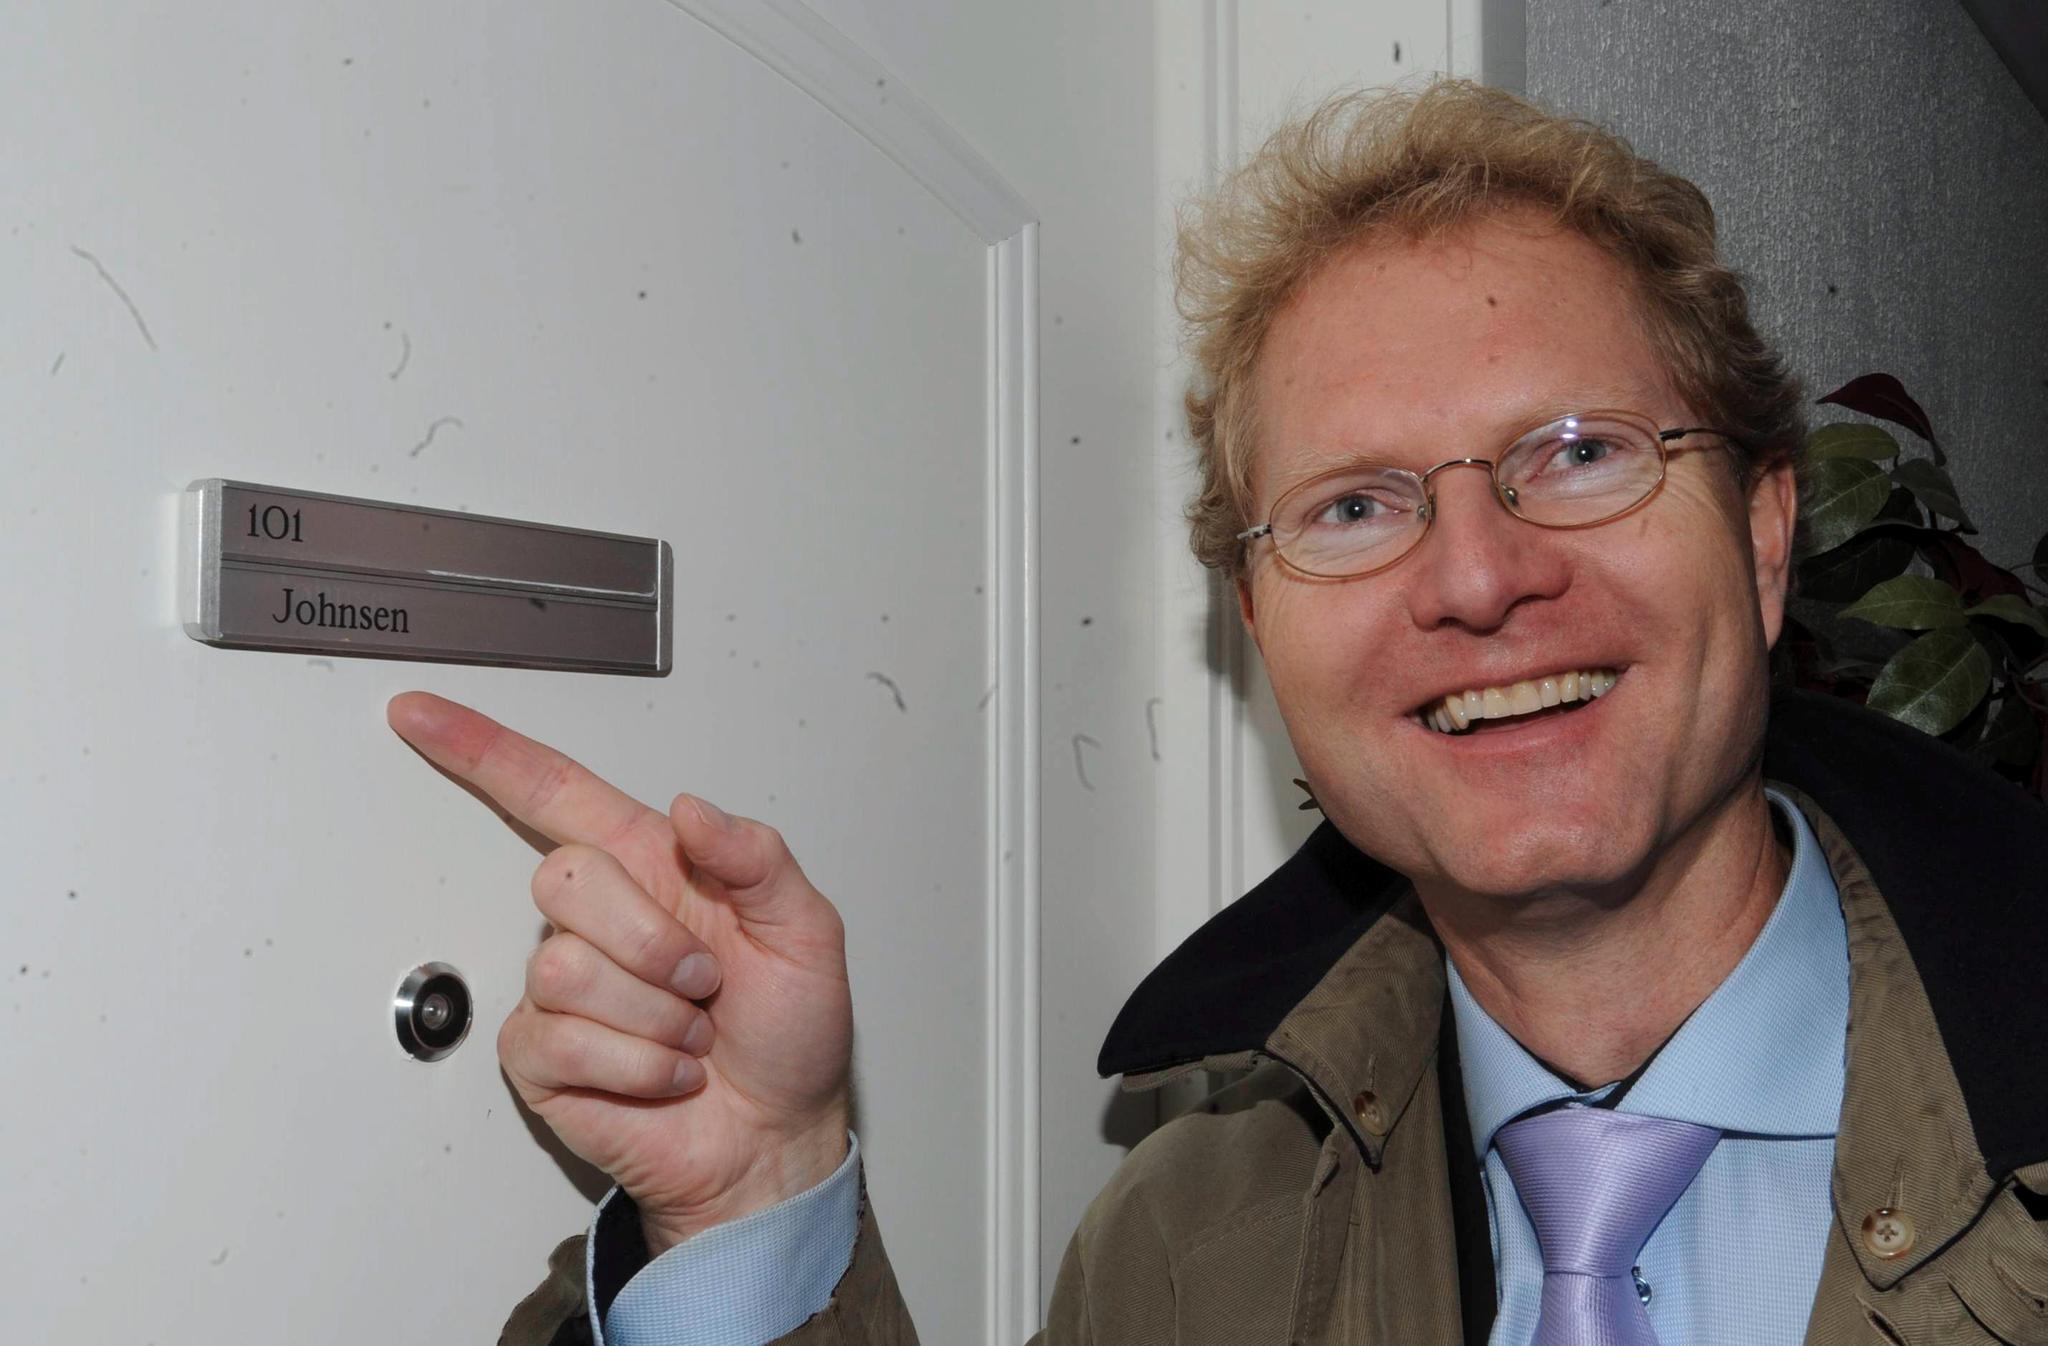 Stortingsrepresentant Tor André Johnsen lot seg avbilde foran døren til sin nye leilighet i forbindelse med en reportasje i Hamar Arbeiderblad. Han har fått kritikk for flere av hans uttalelser om Oslo i artikkelen.